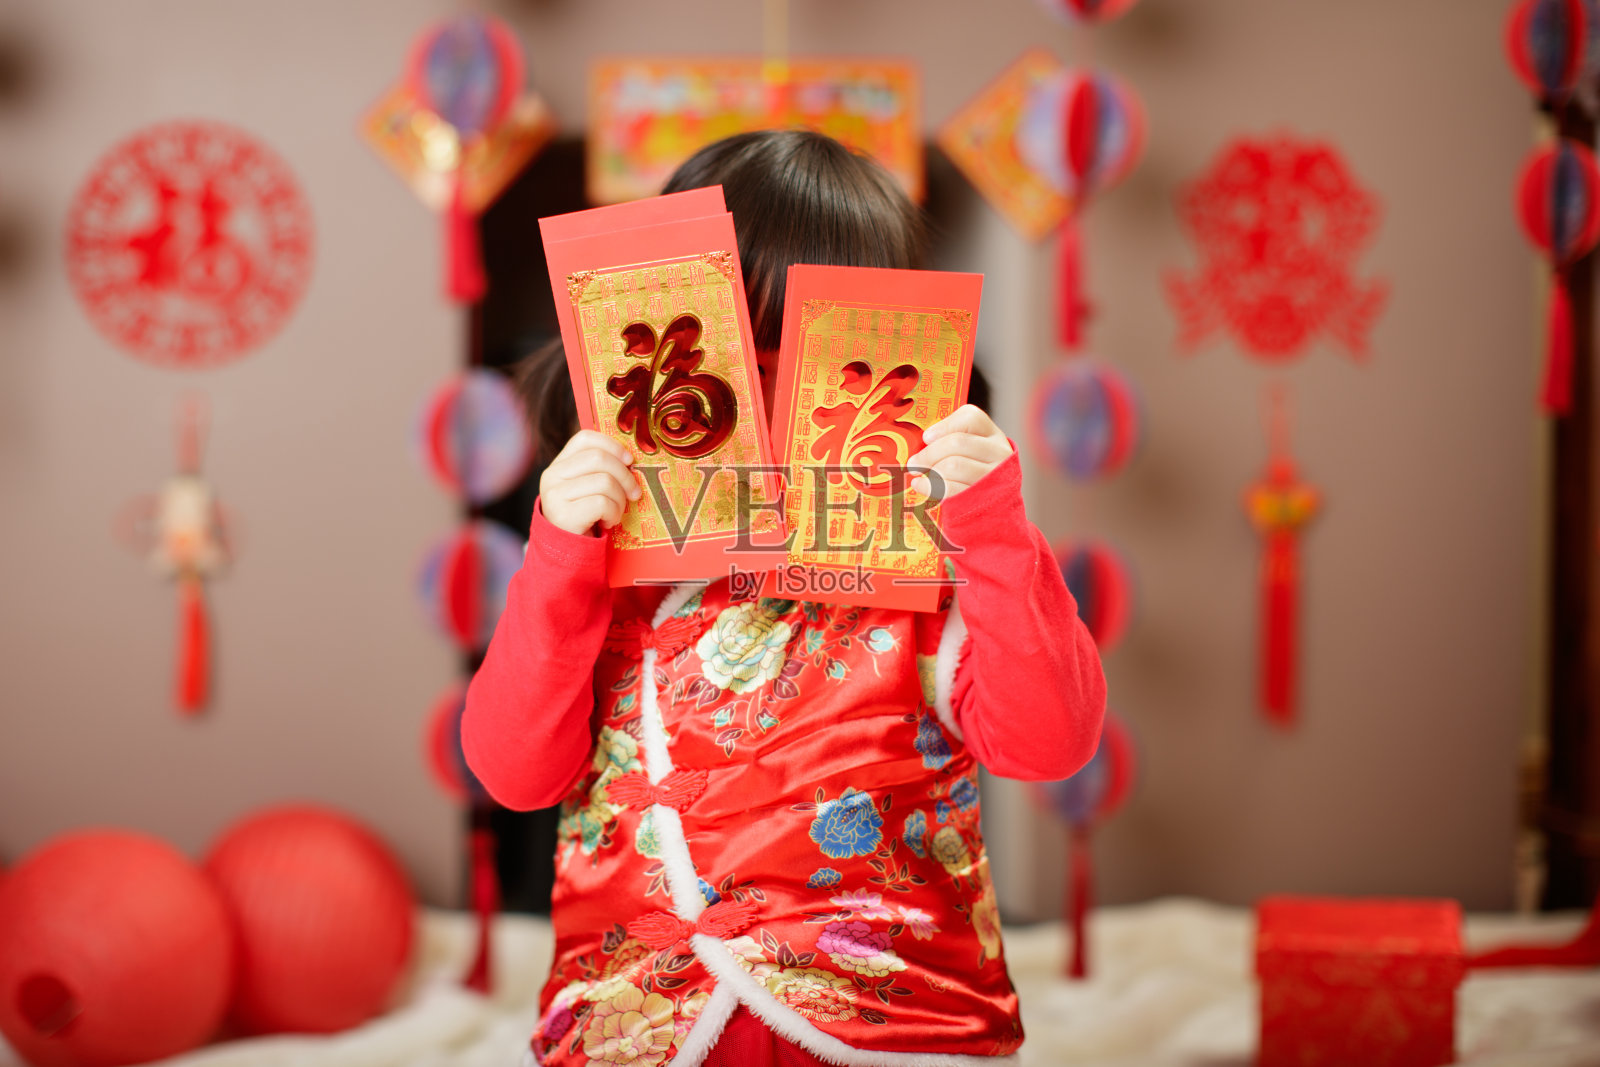 中国女婴传统着装上的“FU”意味着幸运的红包照片摄影图片